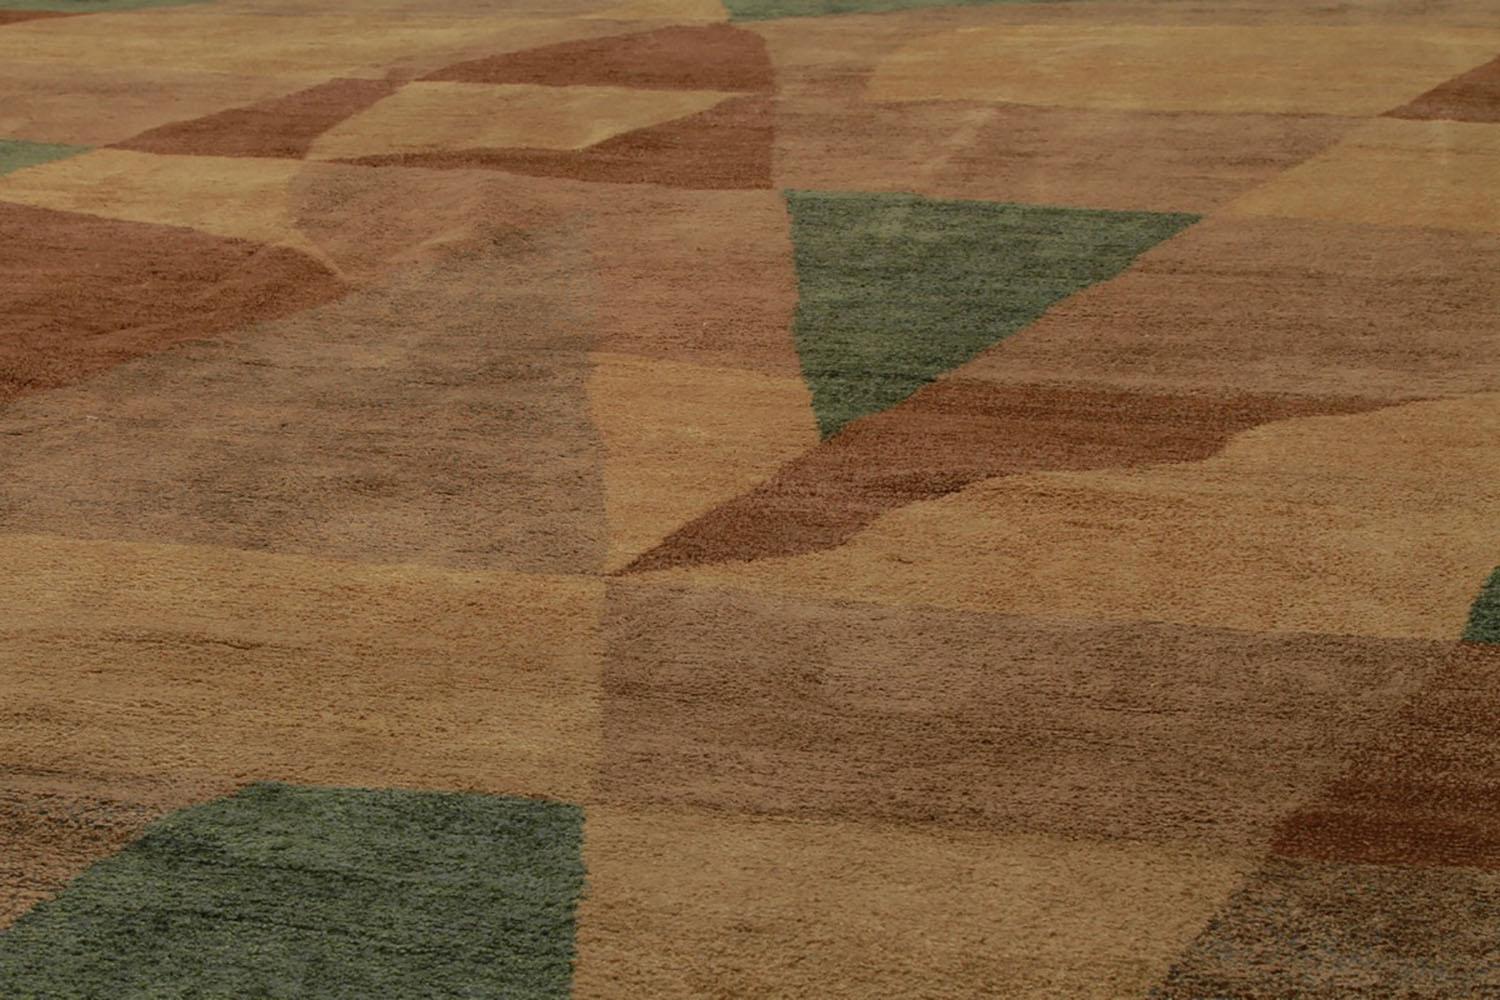 Noué à la main en laine et en soie lumineuse, ce tapis 8x10 s'ajoute à la collection de tapis européens de Rug & Kilim et présente un jeu magistral de couleurs et de motifs, affectueusement surnommé 